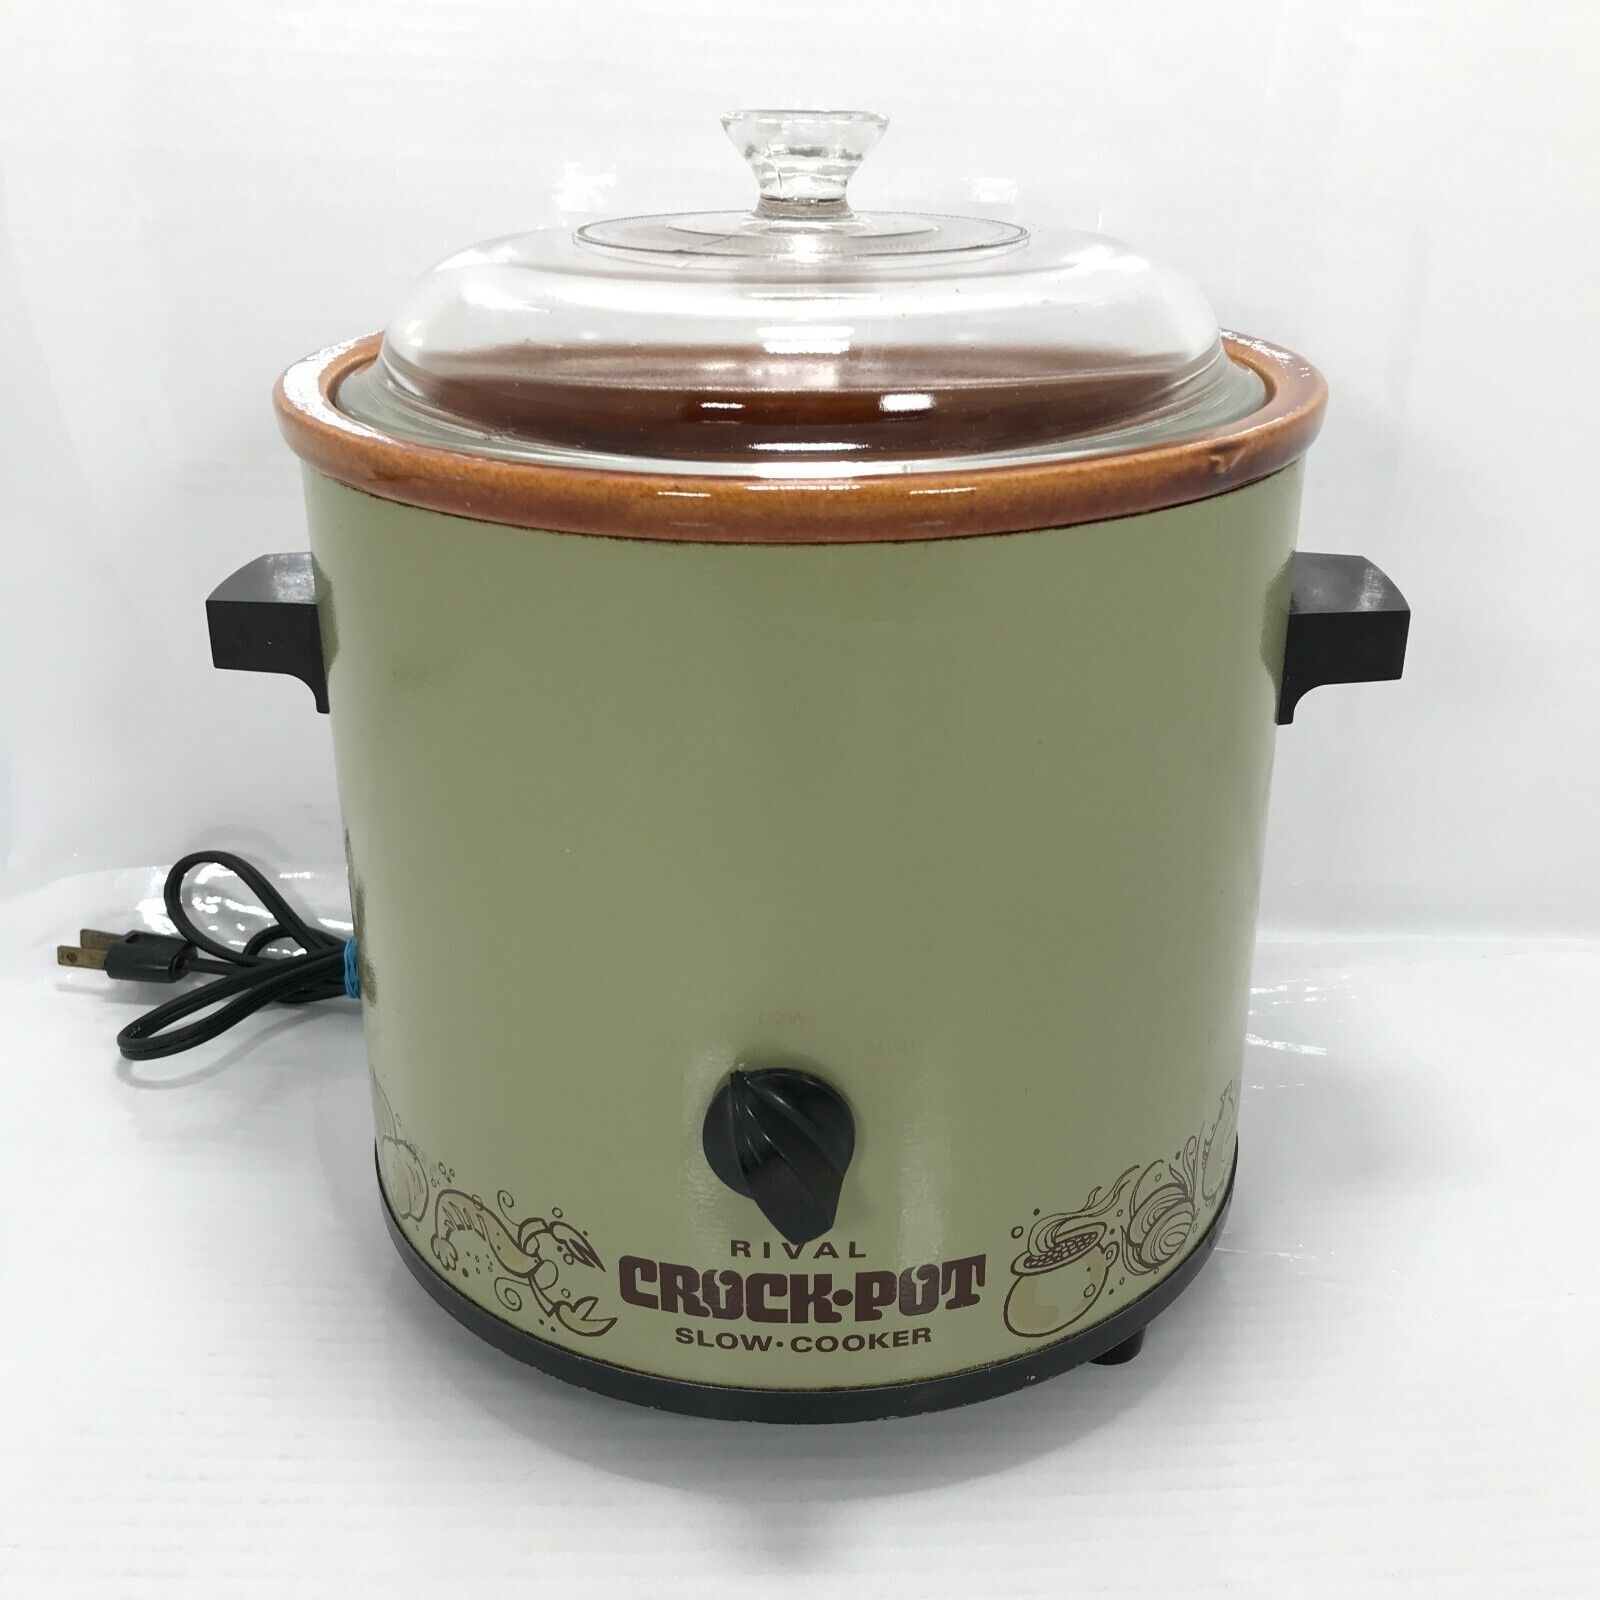 A vintage Rival Crock-Pot slow cooker